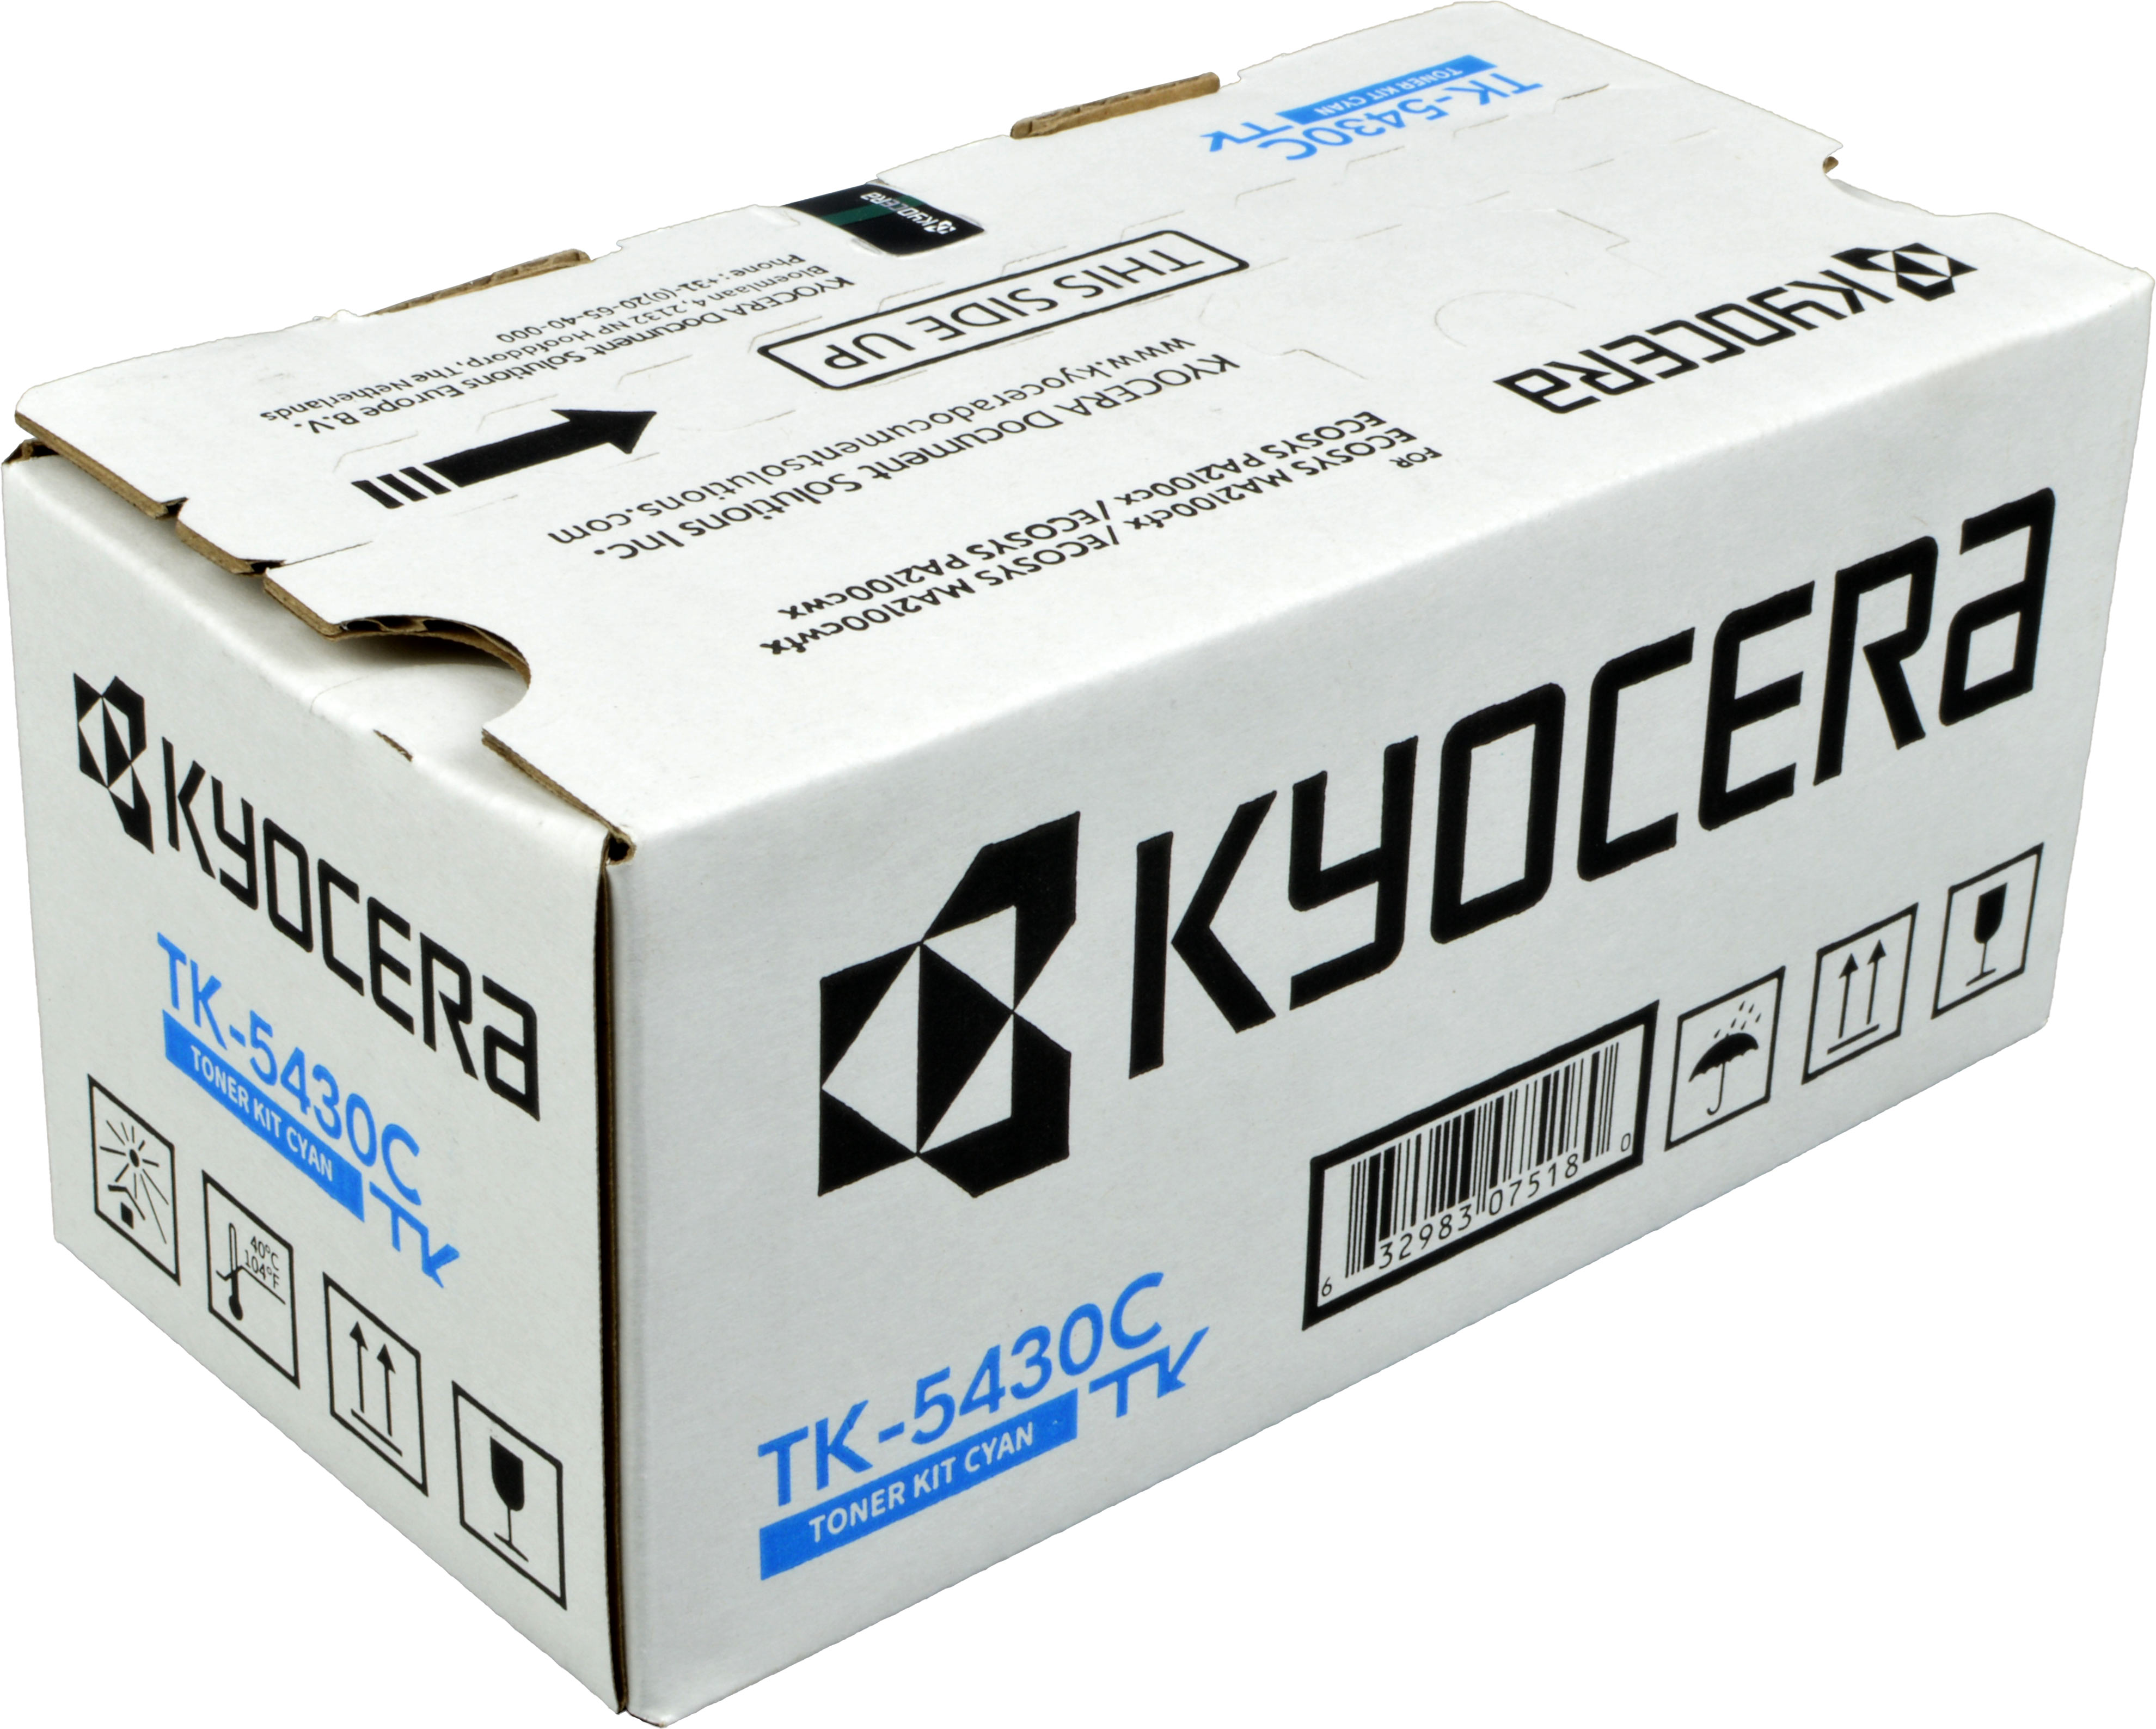 Kyocera Toner TK-5430C  1T0C0AANL1  cyan